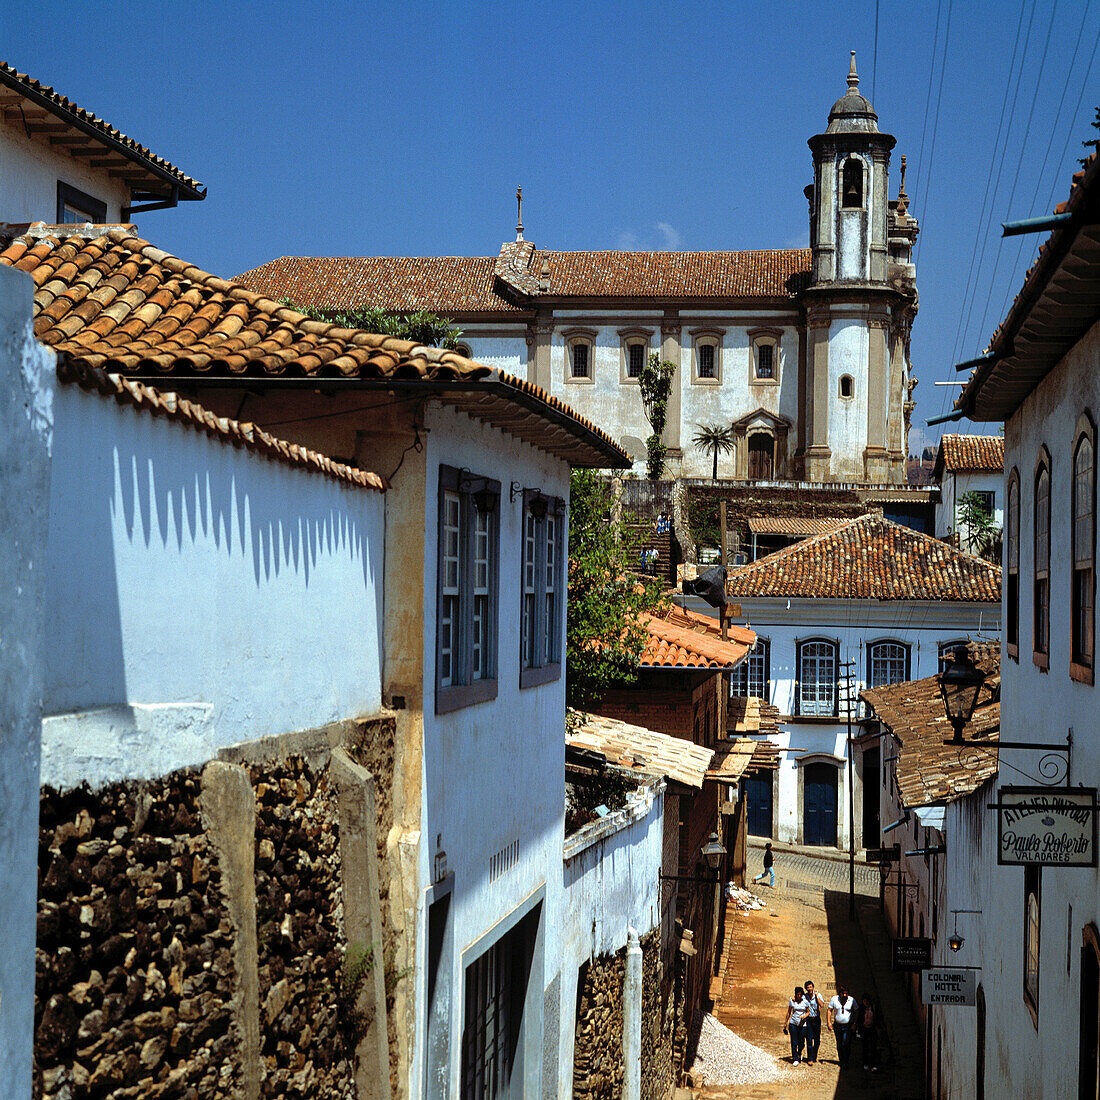 Church of São Francisco. Old City. Ouro Prêto. Brazil